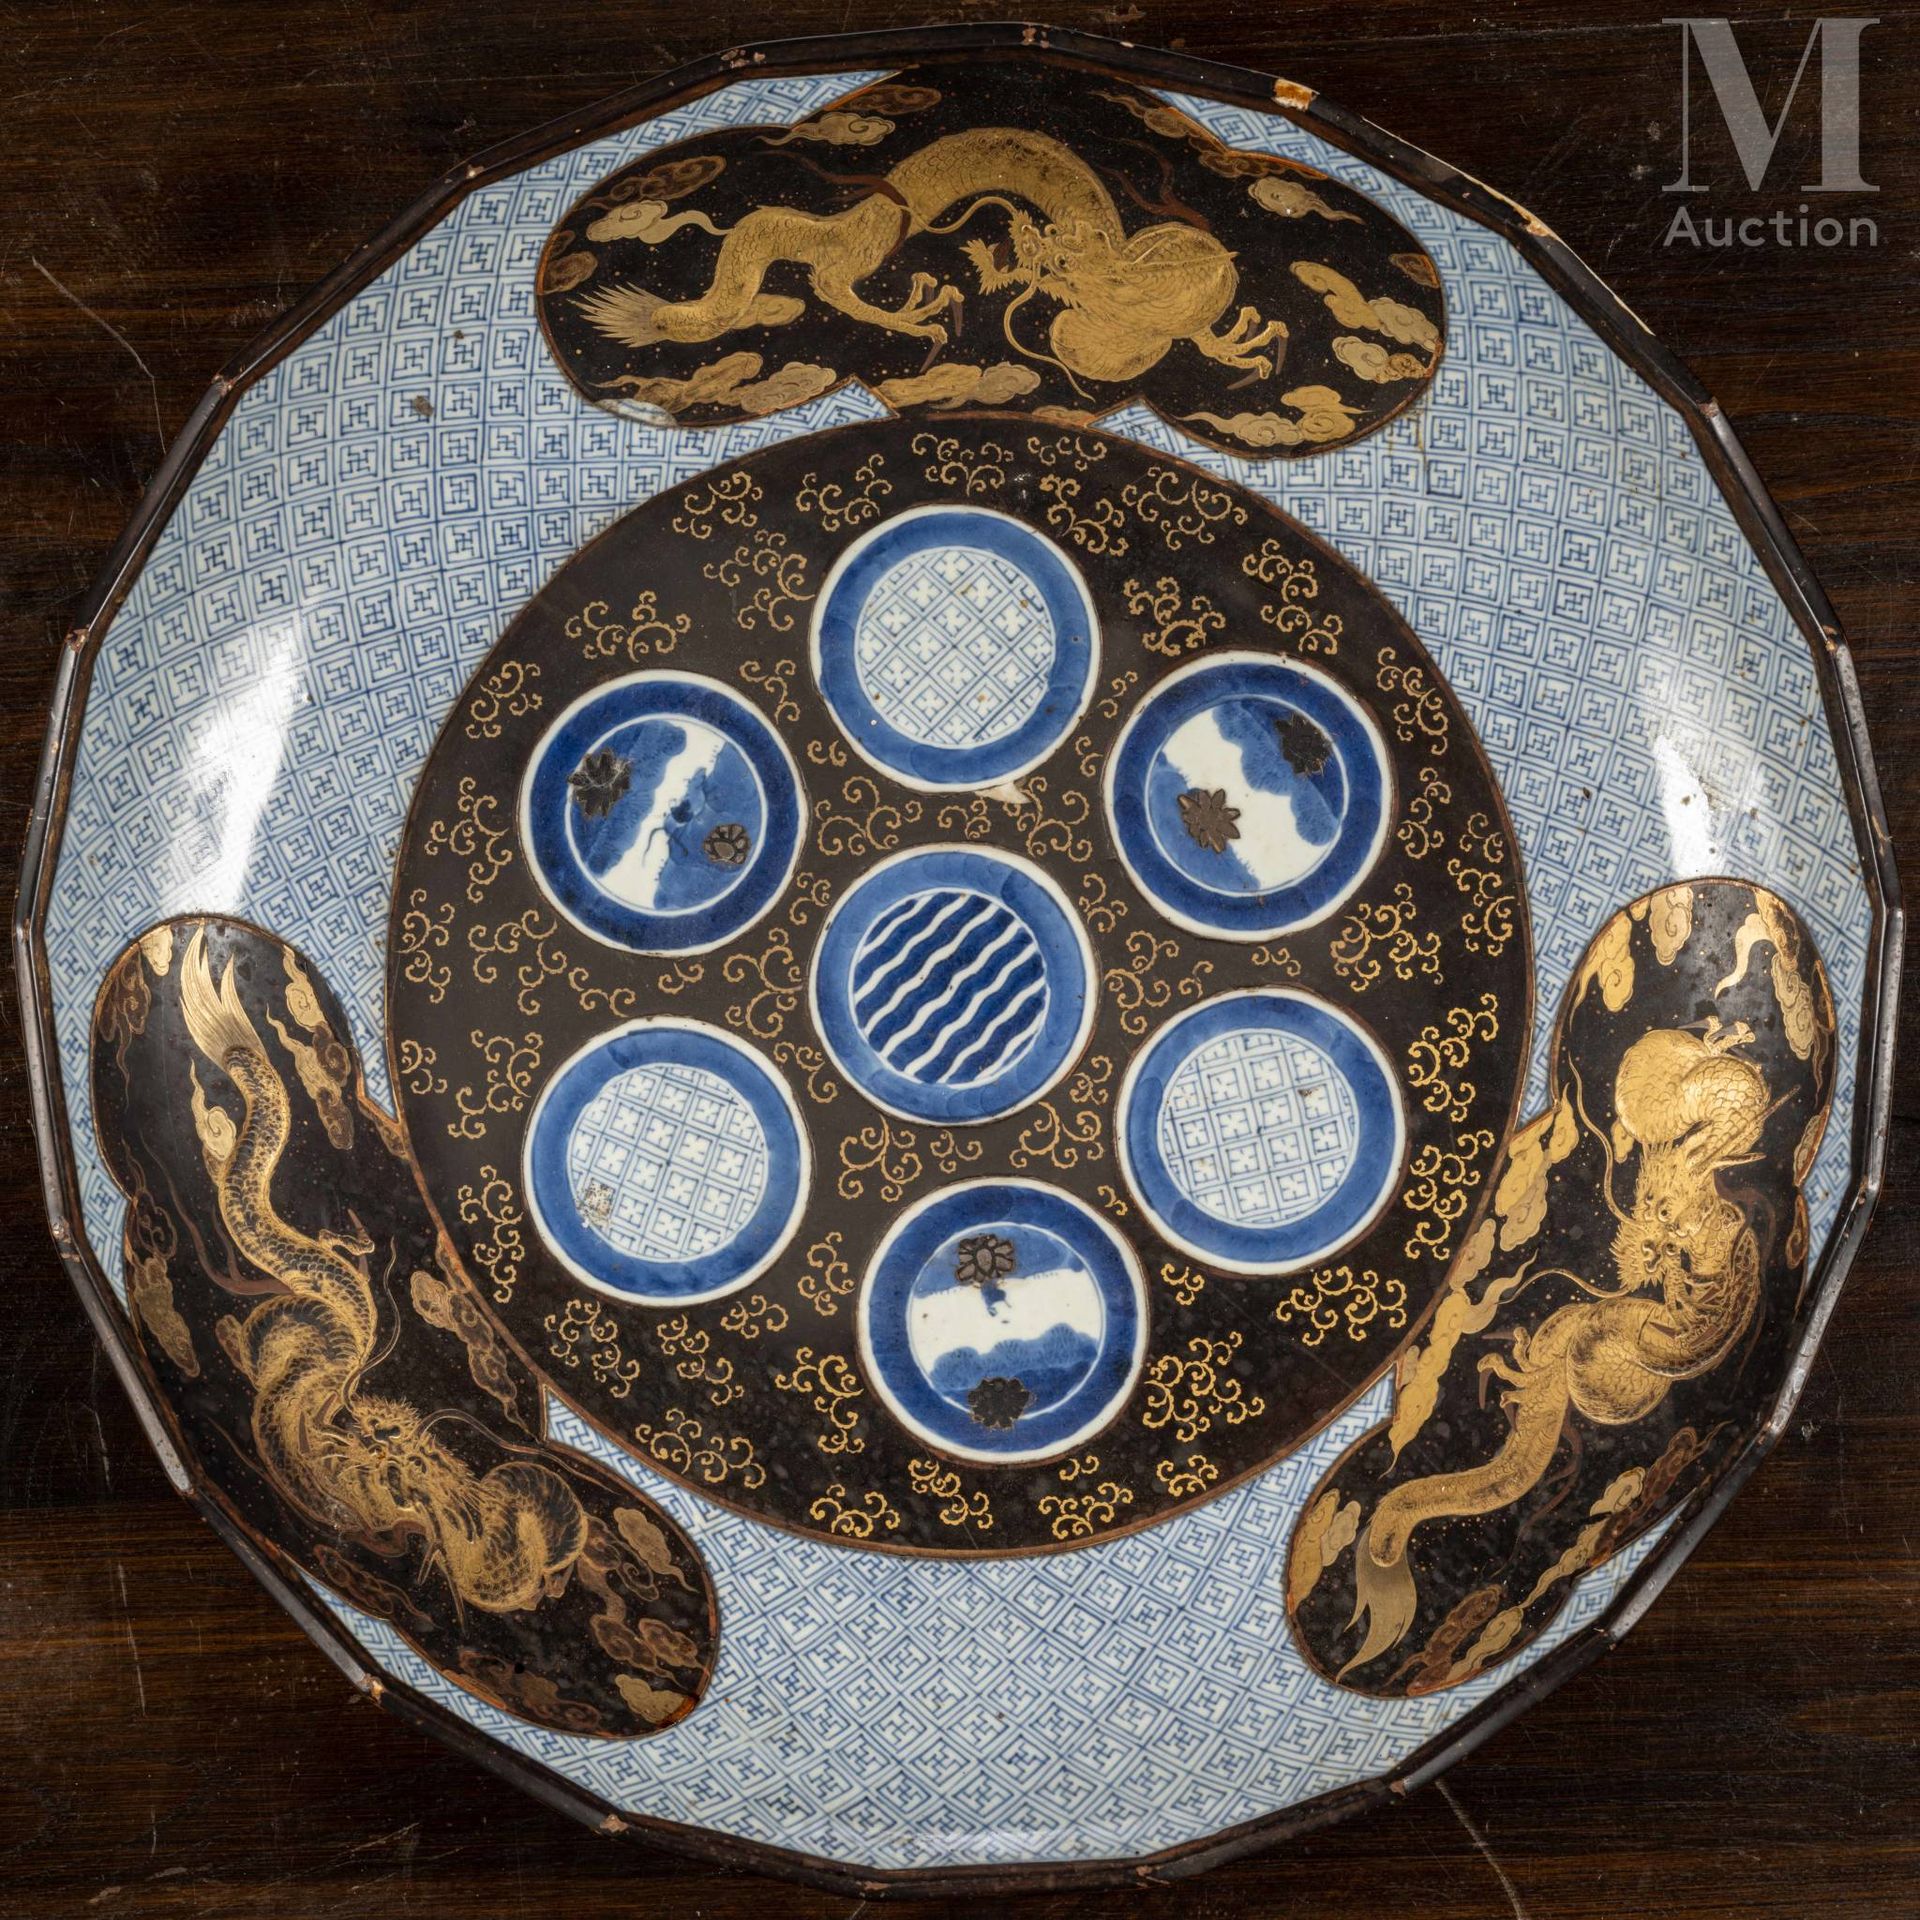 JAPON, XIXe siècle 青花瓷和黑金漆有田大盘，中间饰有圆形徽章，边缘饰有三叶草图的龙，背景衬以几何图案。

直径：52厘米

裂缝